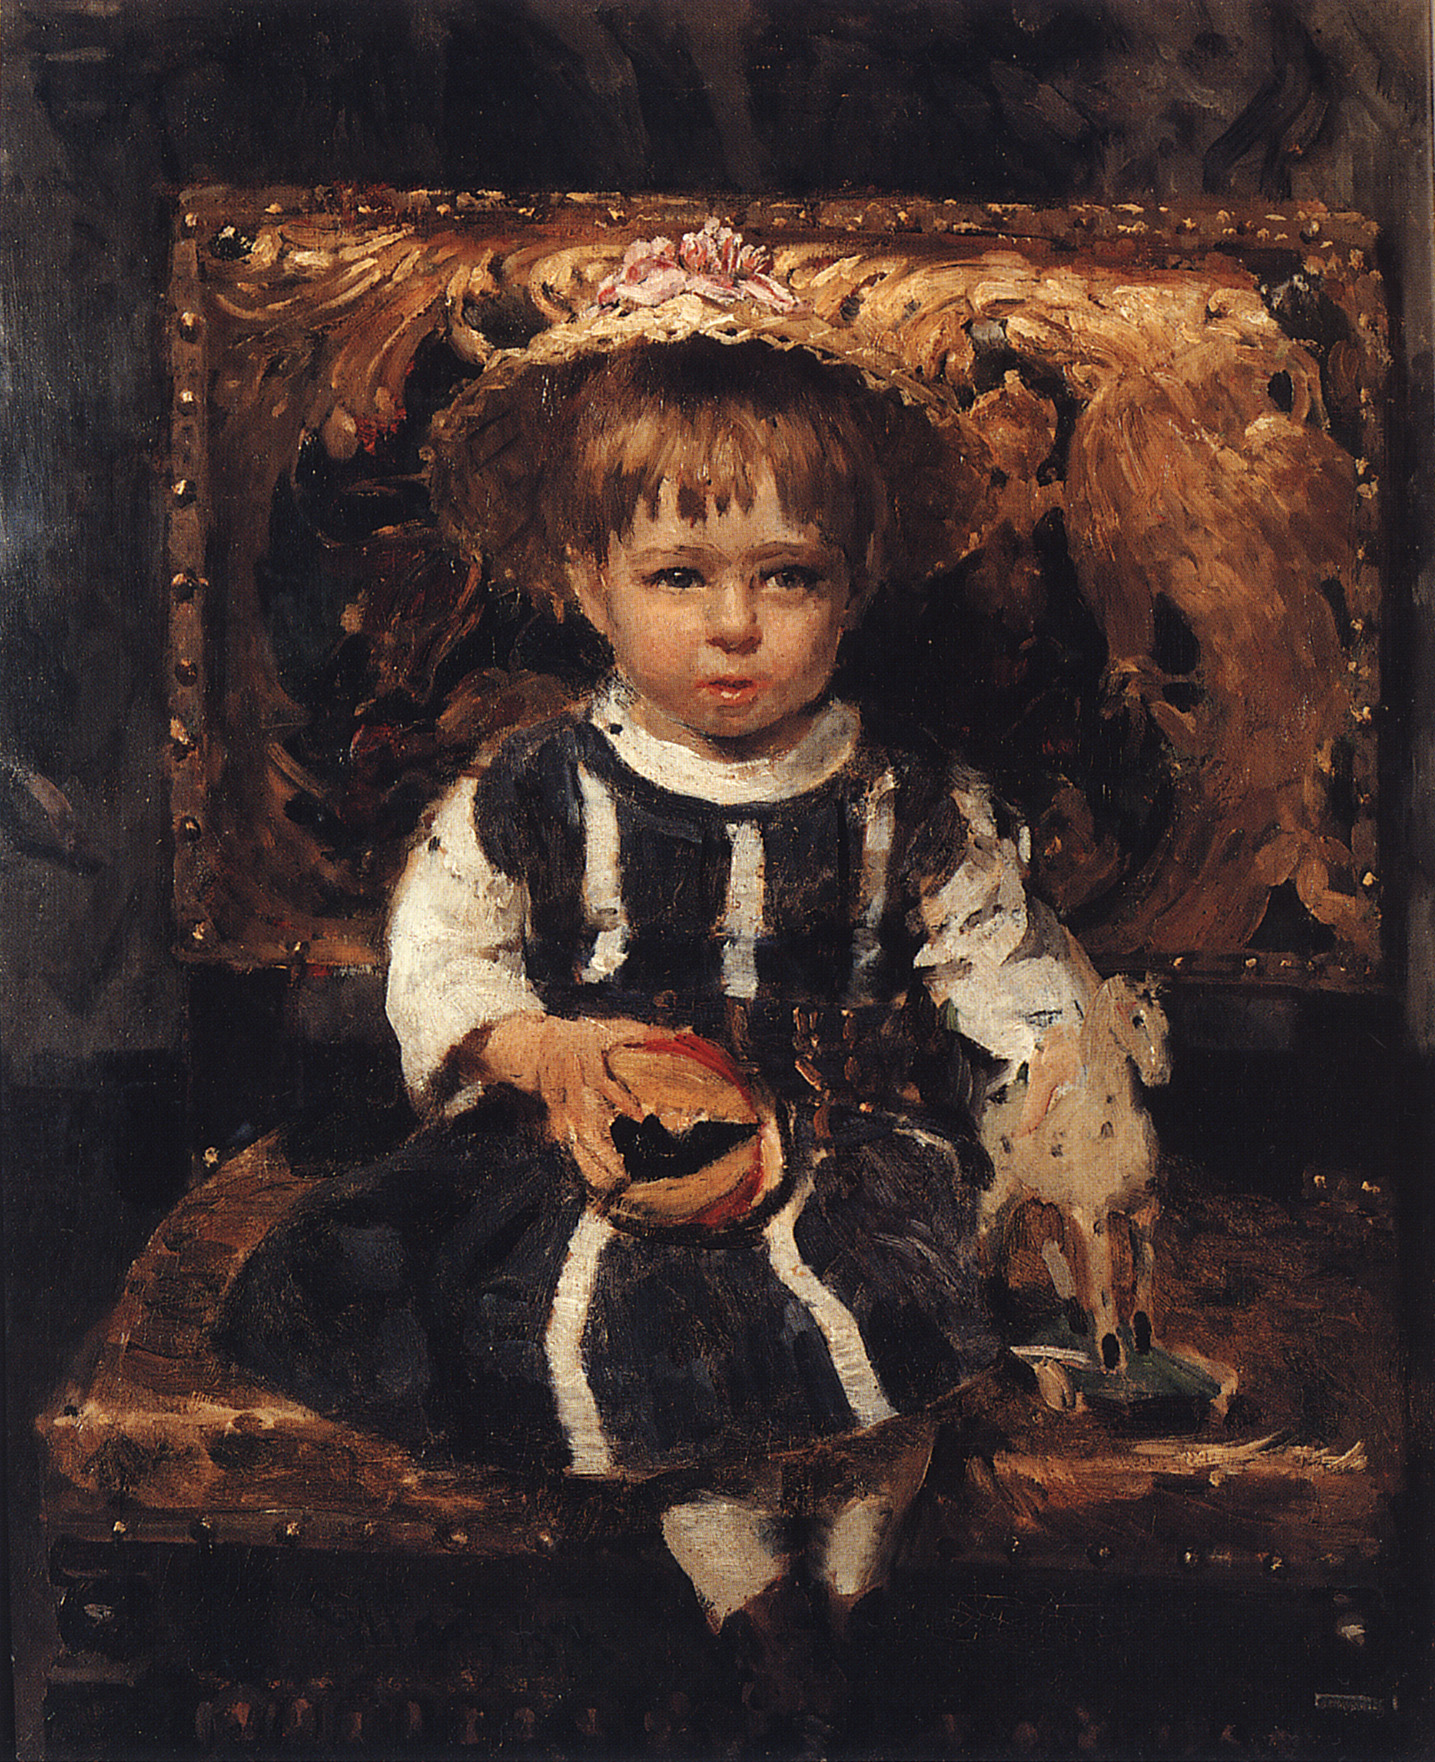 Репин И.. Портрет В.И.Репиной, дочери художника в детстве. 1874